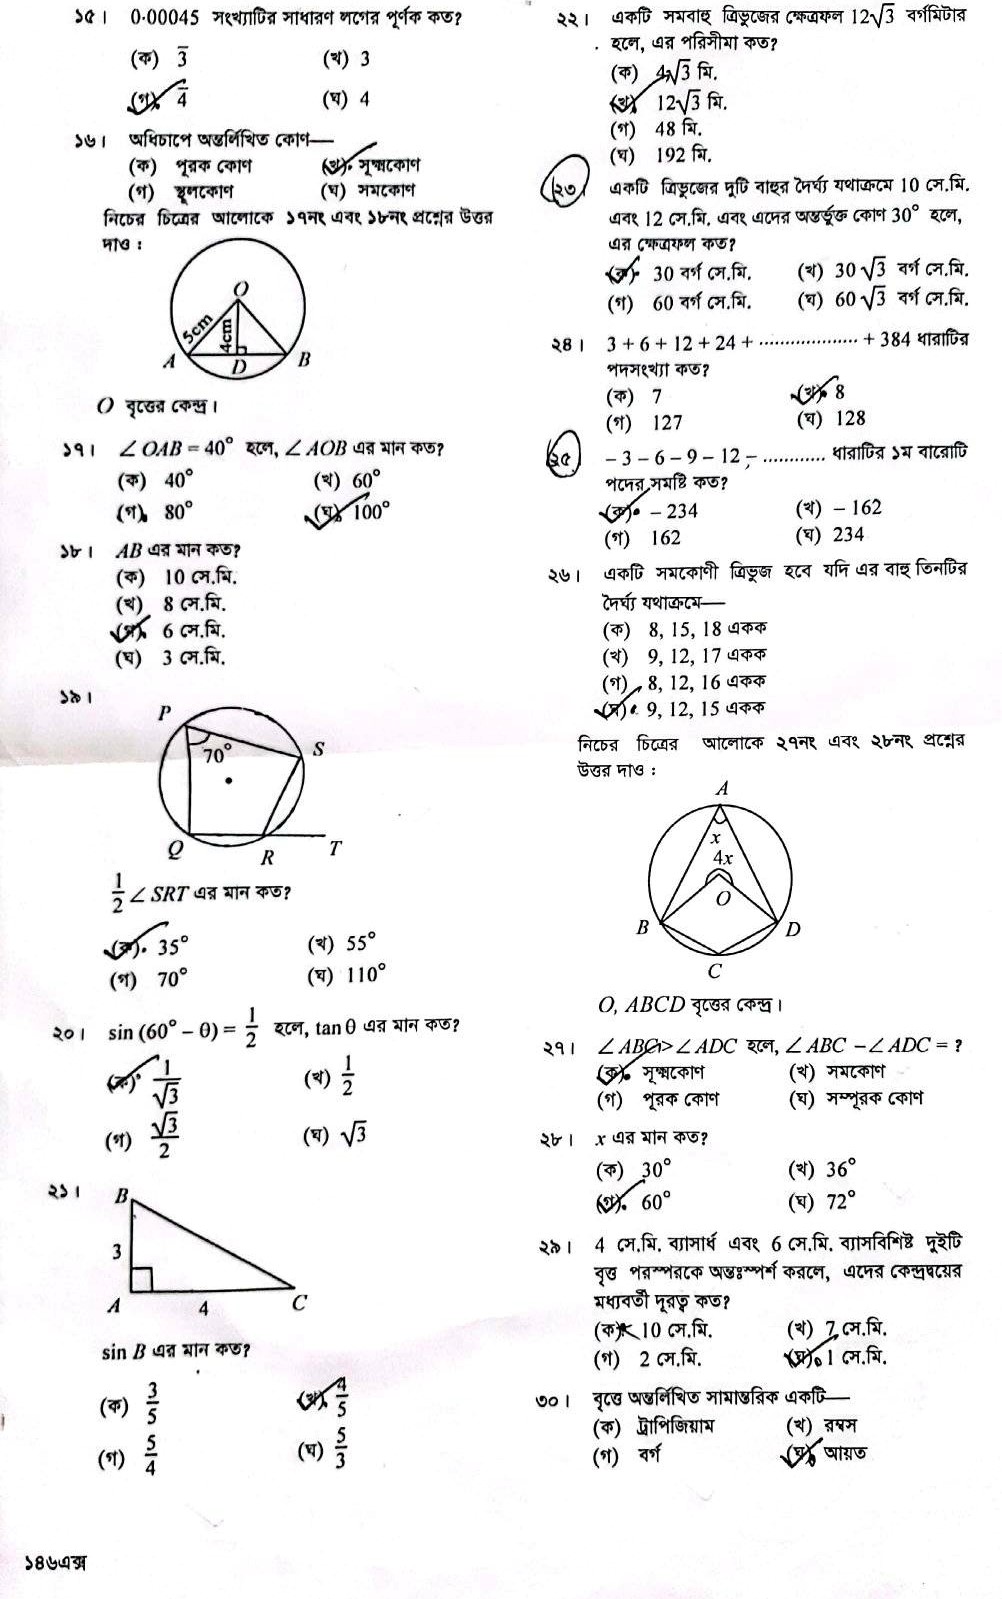 এসএসসি গণিত প্রশ্ন সমাধান ২০২৩ ঢাকা বোর্ড - SSC Math solution 2023 Dhaka board (2)